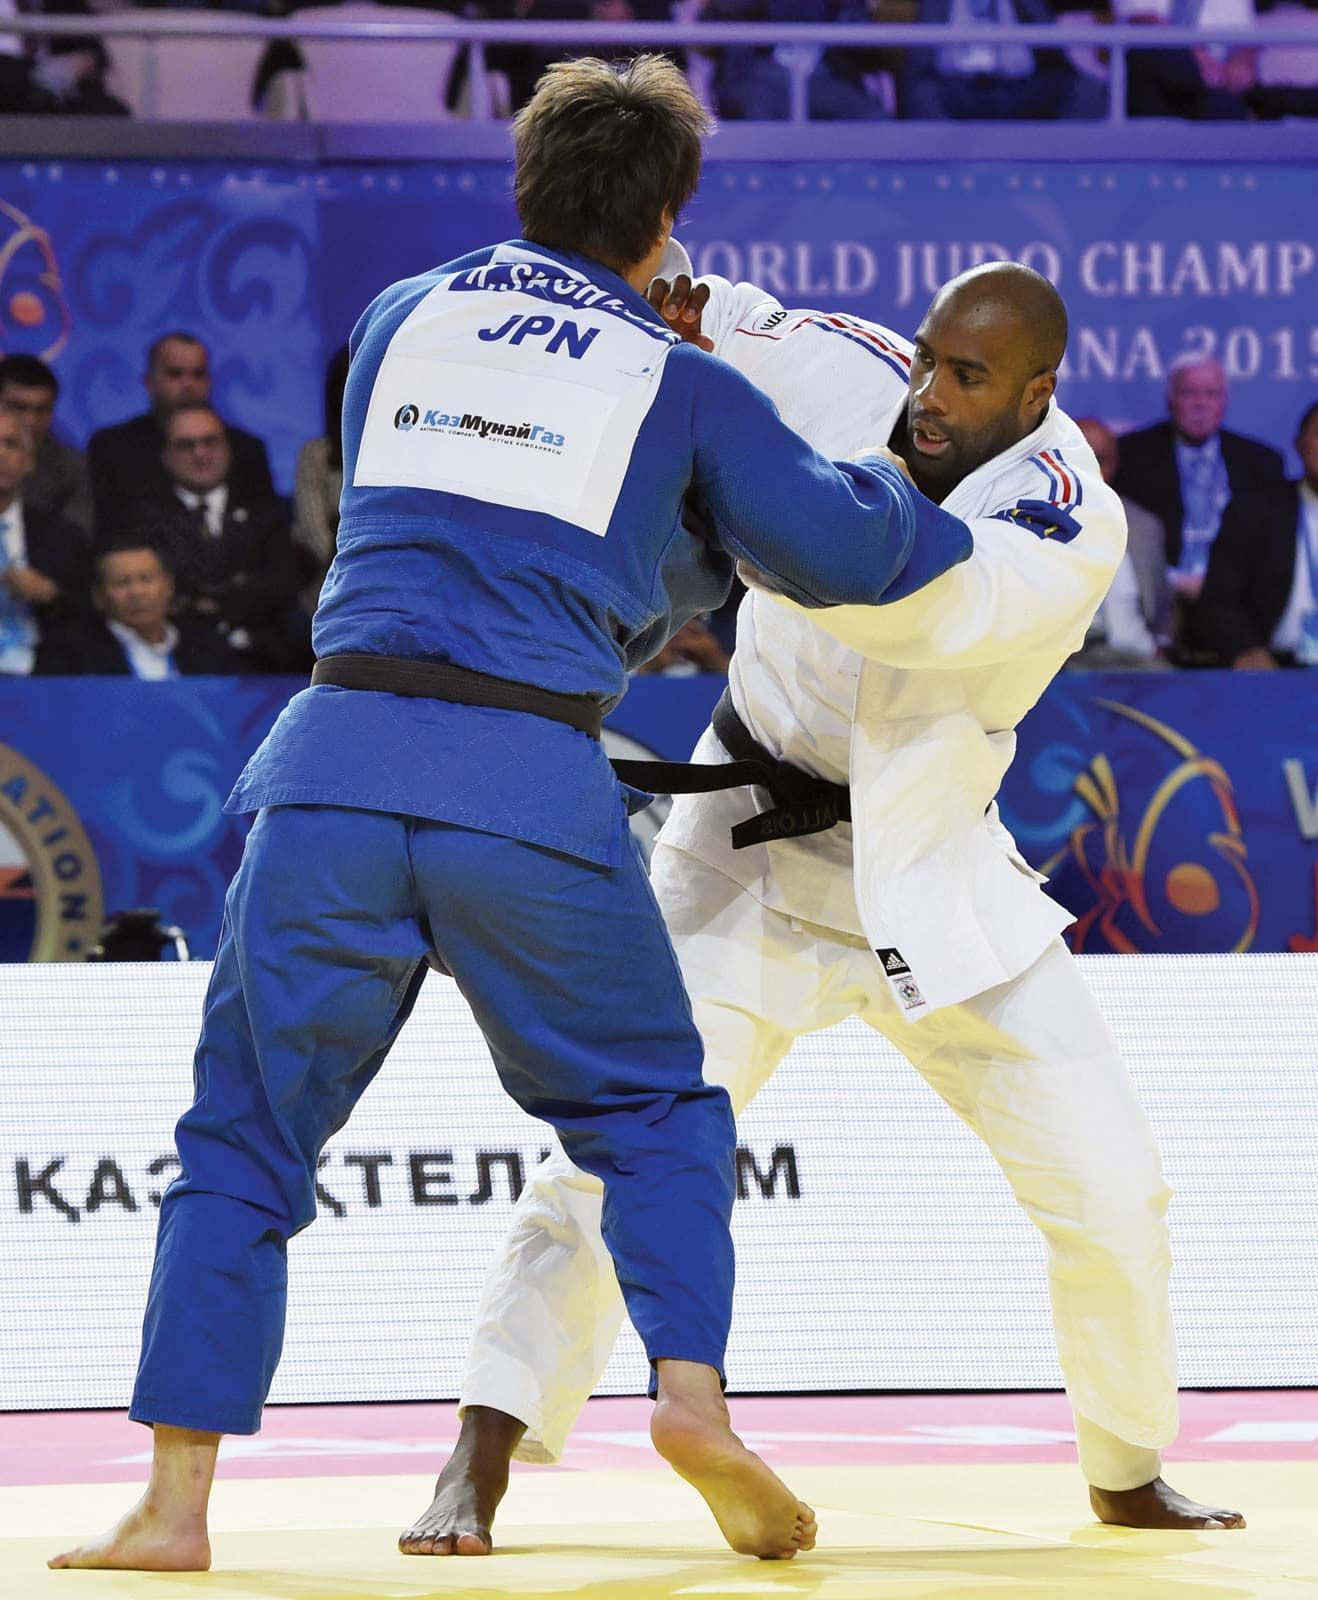 Tomænd I Blå Judo-uniformer Kæmper.